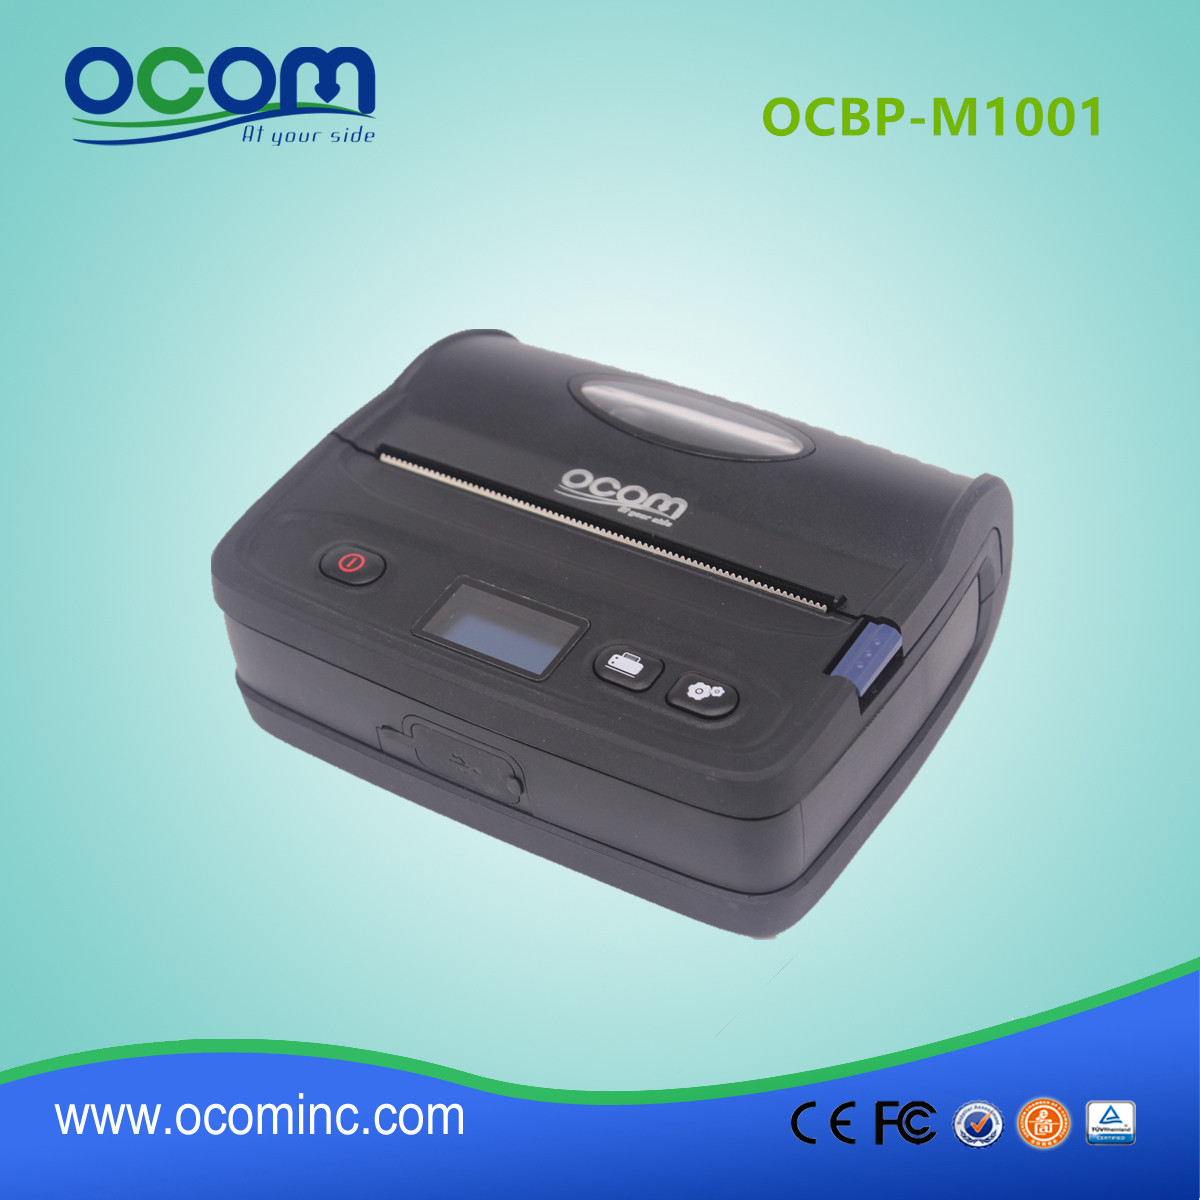 OCBP-M1001 noir adhésif mobile POS de réception thermique étiquette code à barres imprimante